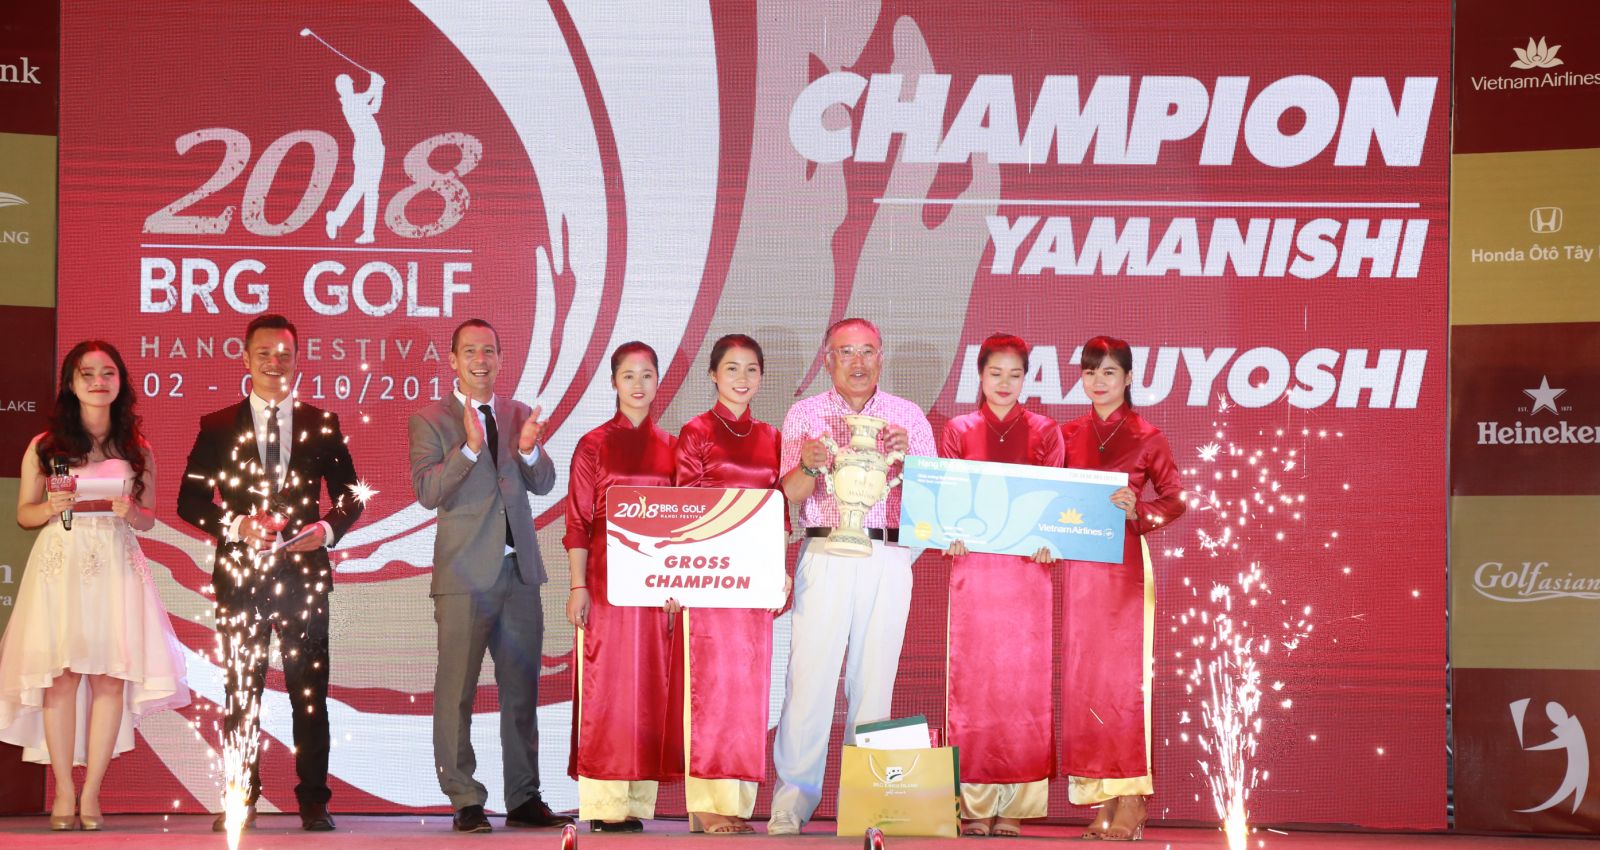 Gôn thủ Nhật Bản Yamanishi Kazuyoshi giành chức vô địch BRG Golf Hà Nội Festival 2018.